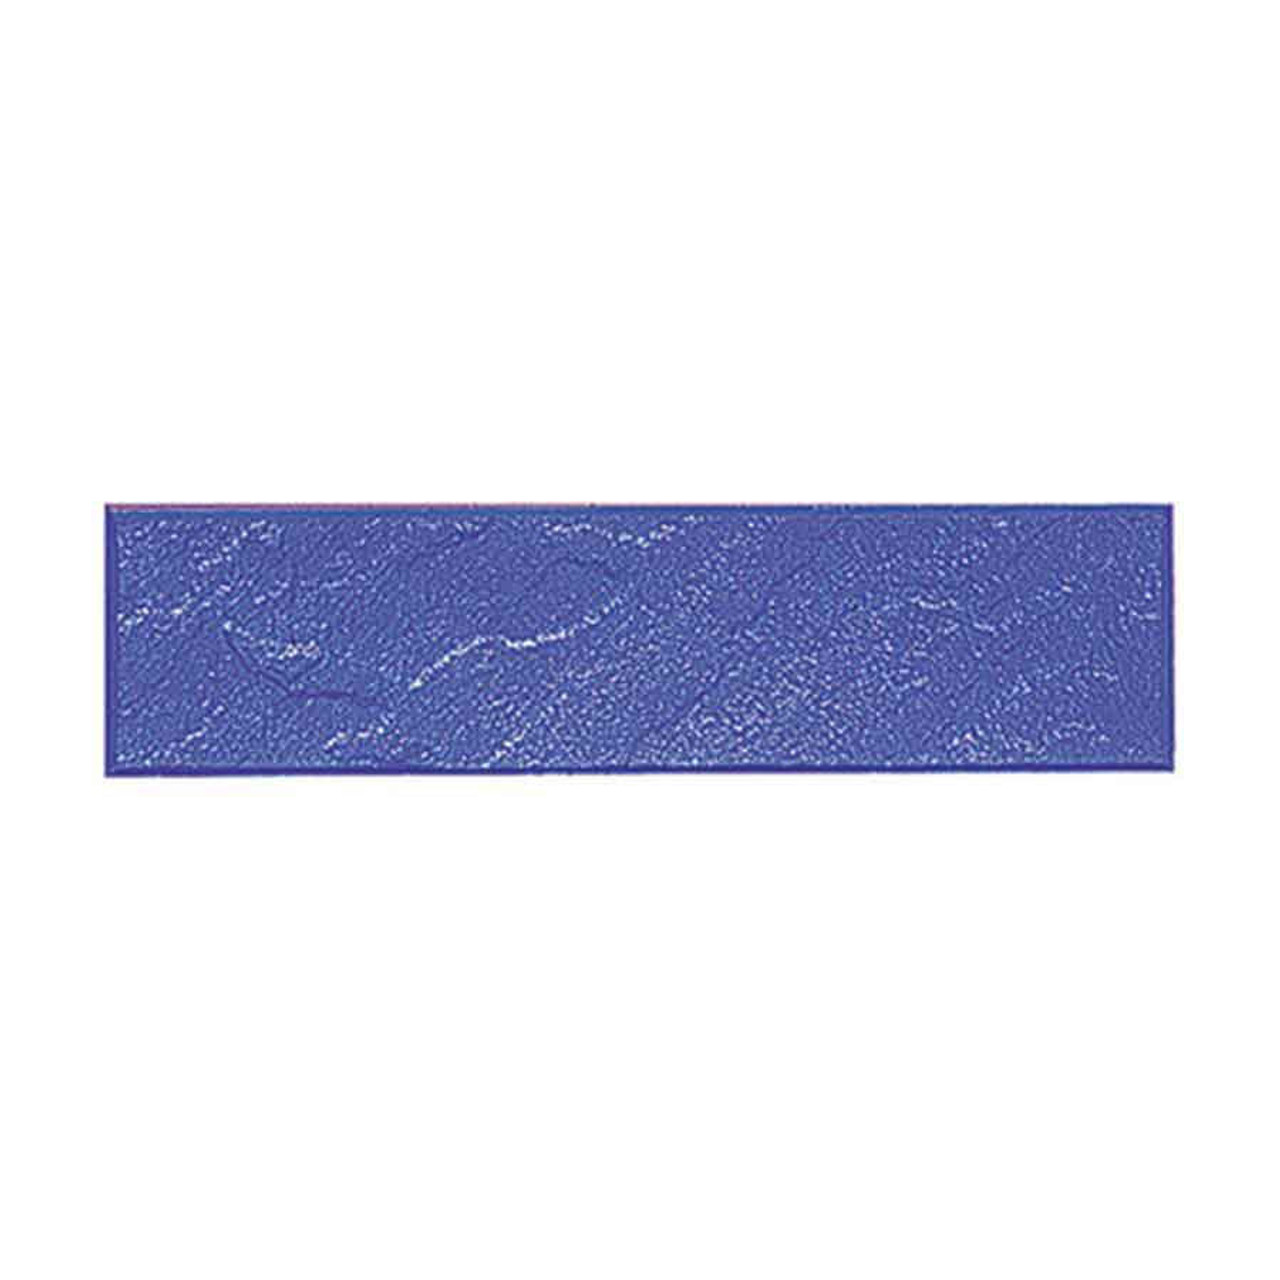 Texture Mat Lancaster Blue Stone 6